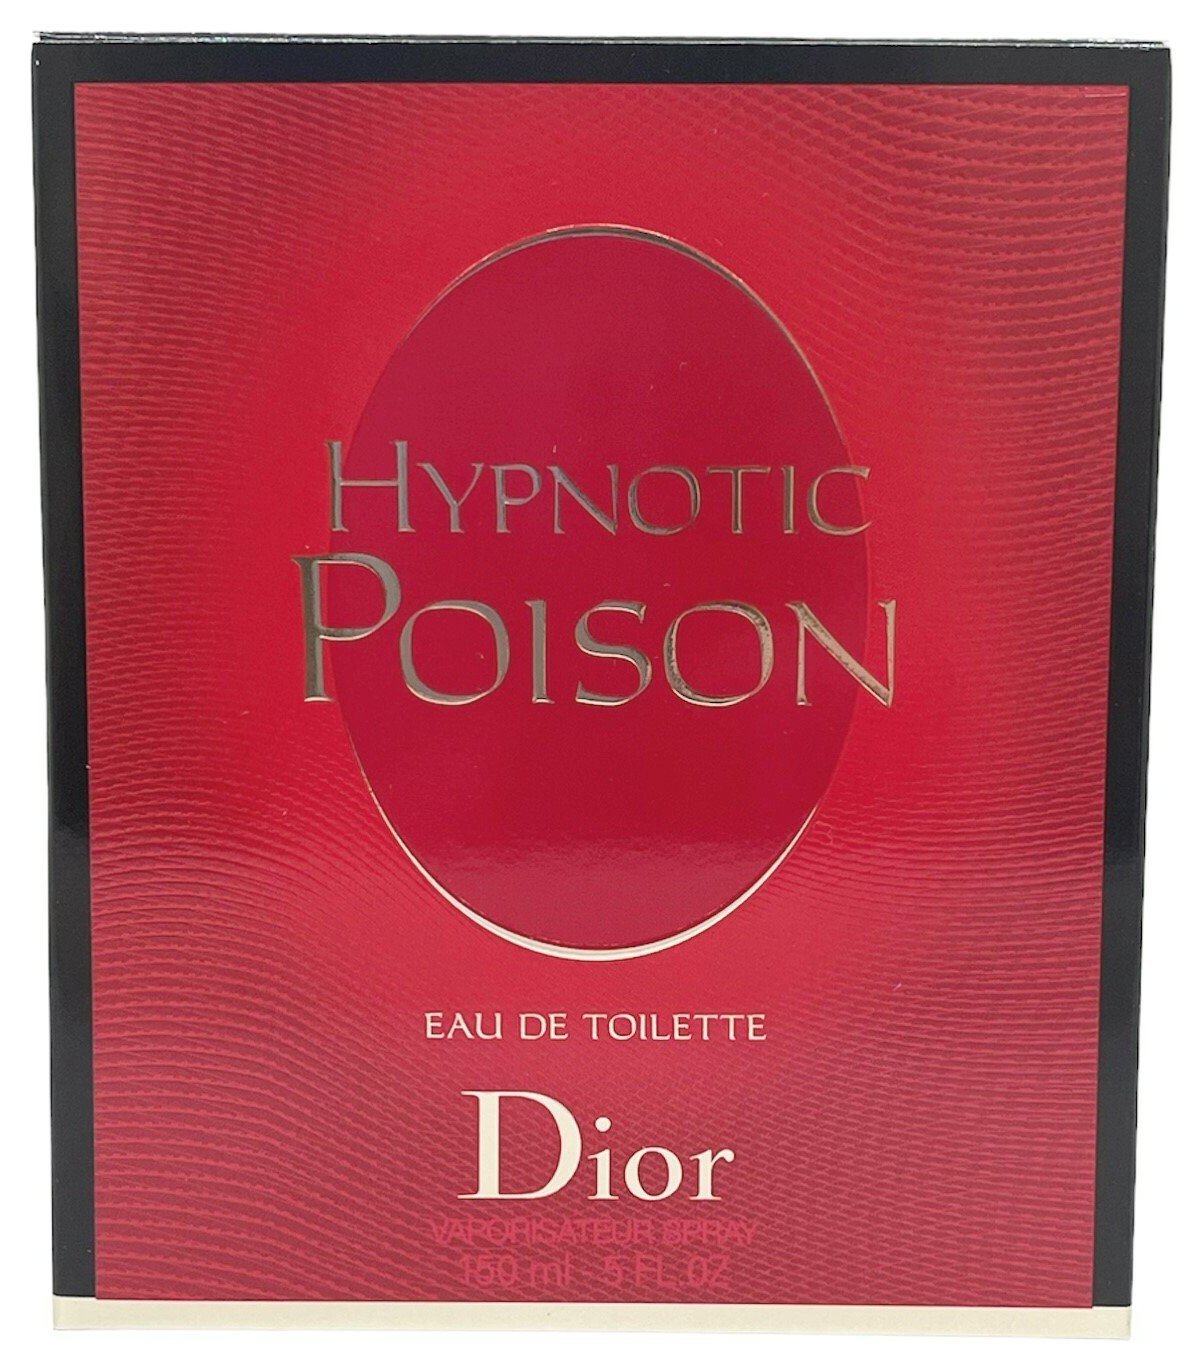 Dior Hypnotic Poison Women's Eau de Toilette - 150ml